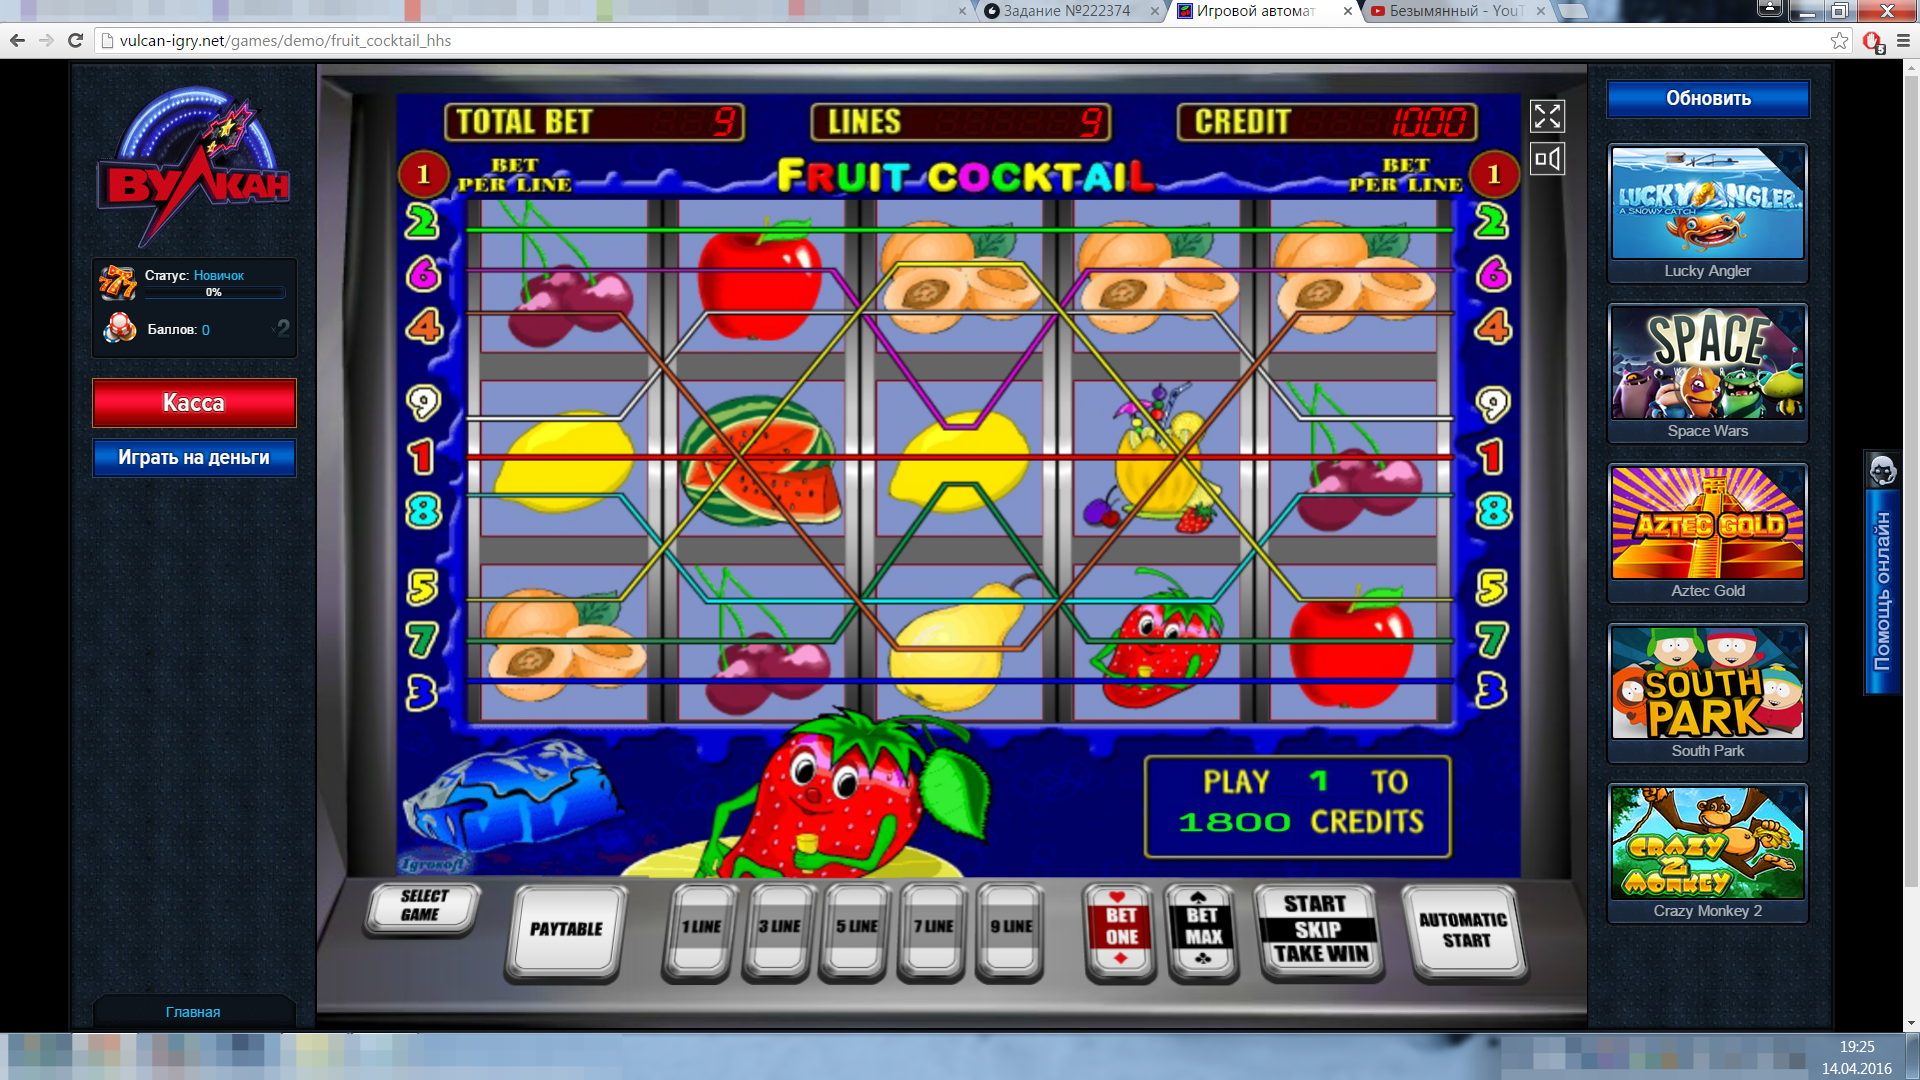 Скачать эмуляторы игровой автомат казино онлайн бесплатно и без регистрации